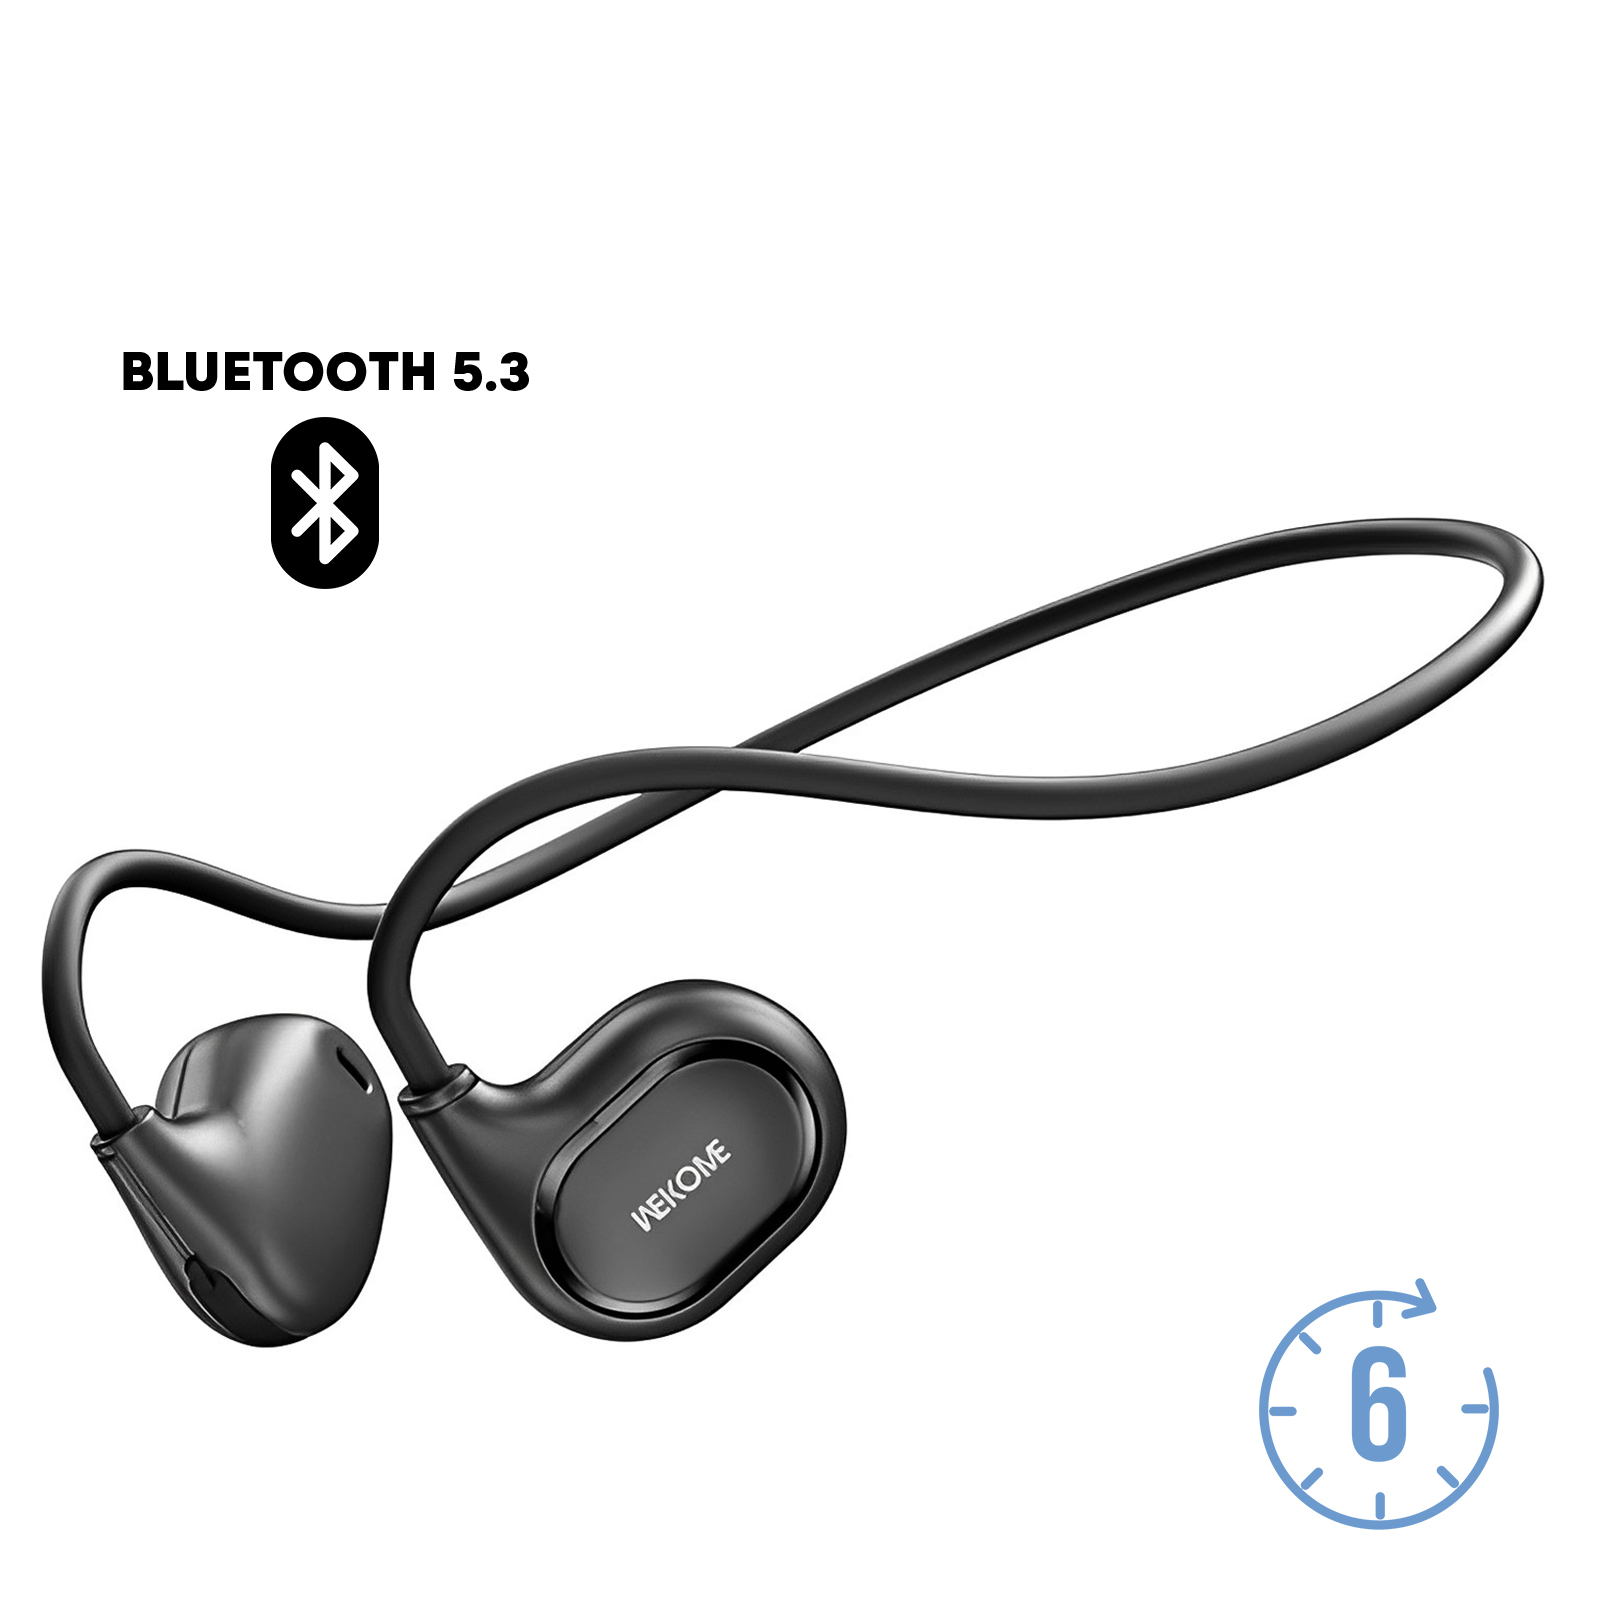 Bluetooth-Zubehör für Smartphones und Tablets | Gsm55